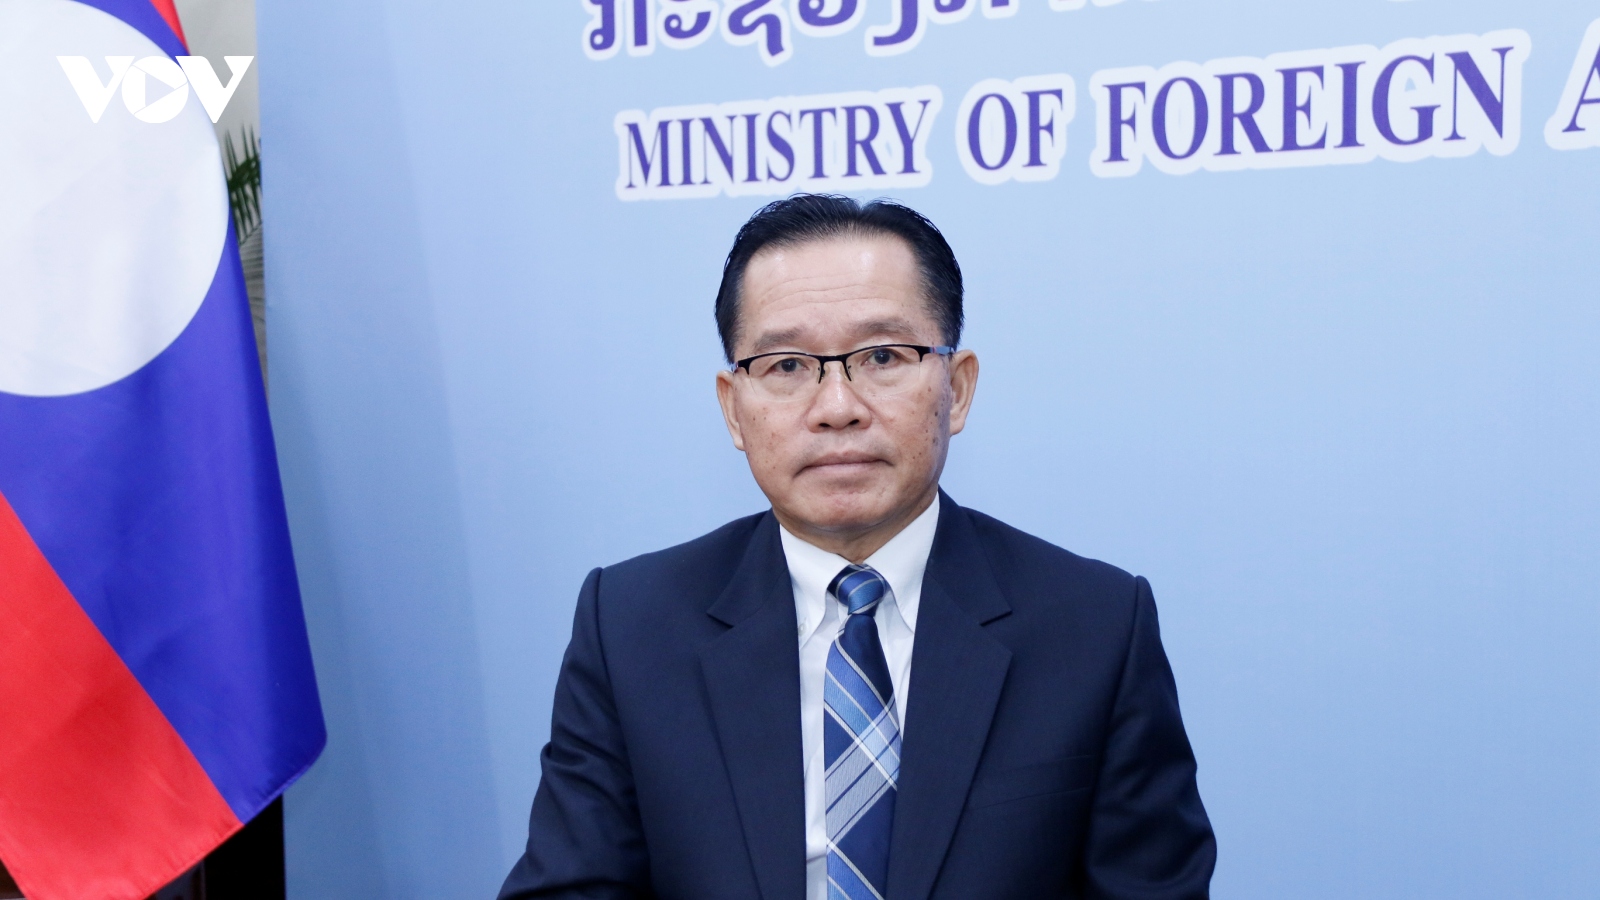 Việt Nam đã thể hiện vai trò trung tâm đoàn kết của ASEAN